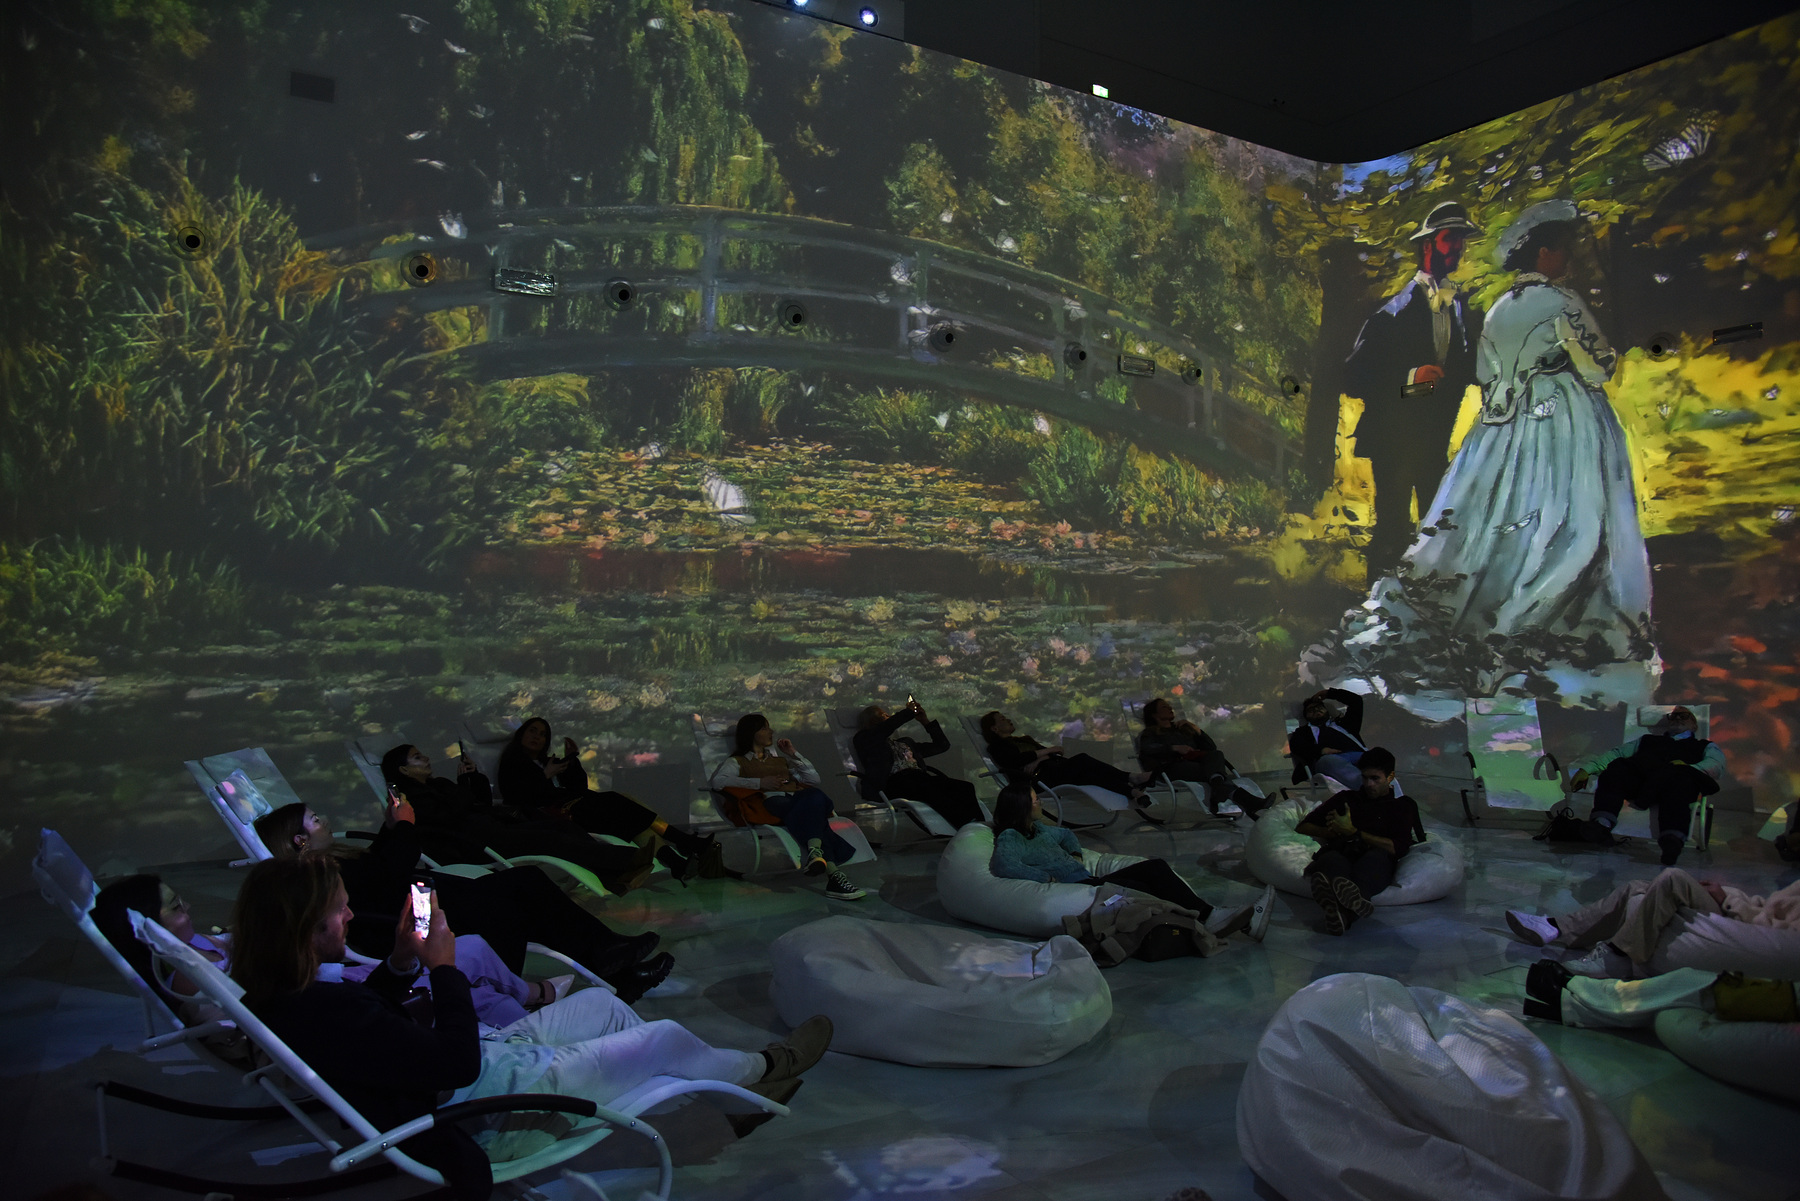 Monet e l'arte impressionista in versione immersiva a Milano | Sky Arte